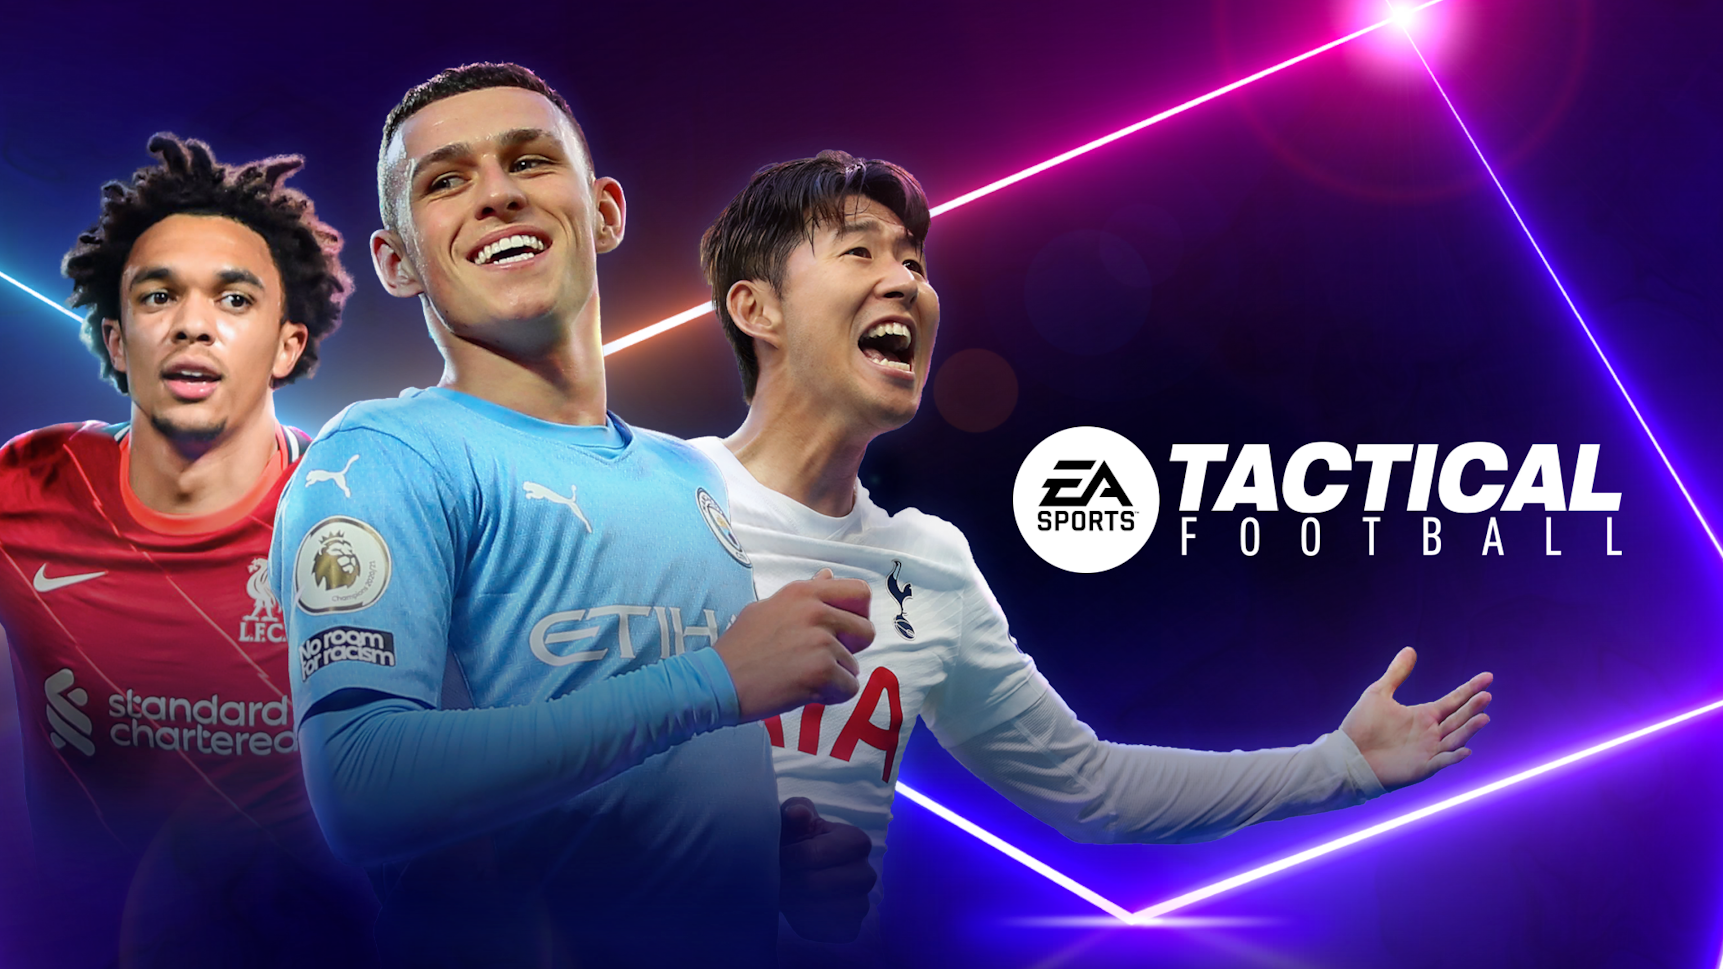 Tactical Football: تبدأ شركة EA Sports التسجيل المسبق لأحدث لعبة كرة القدم